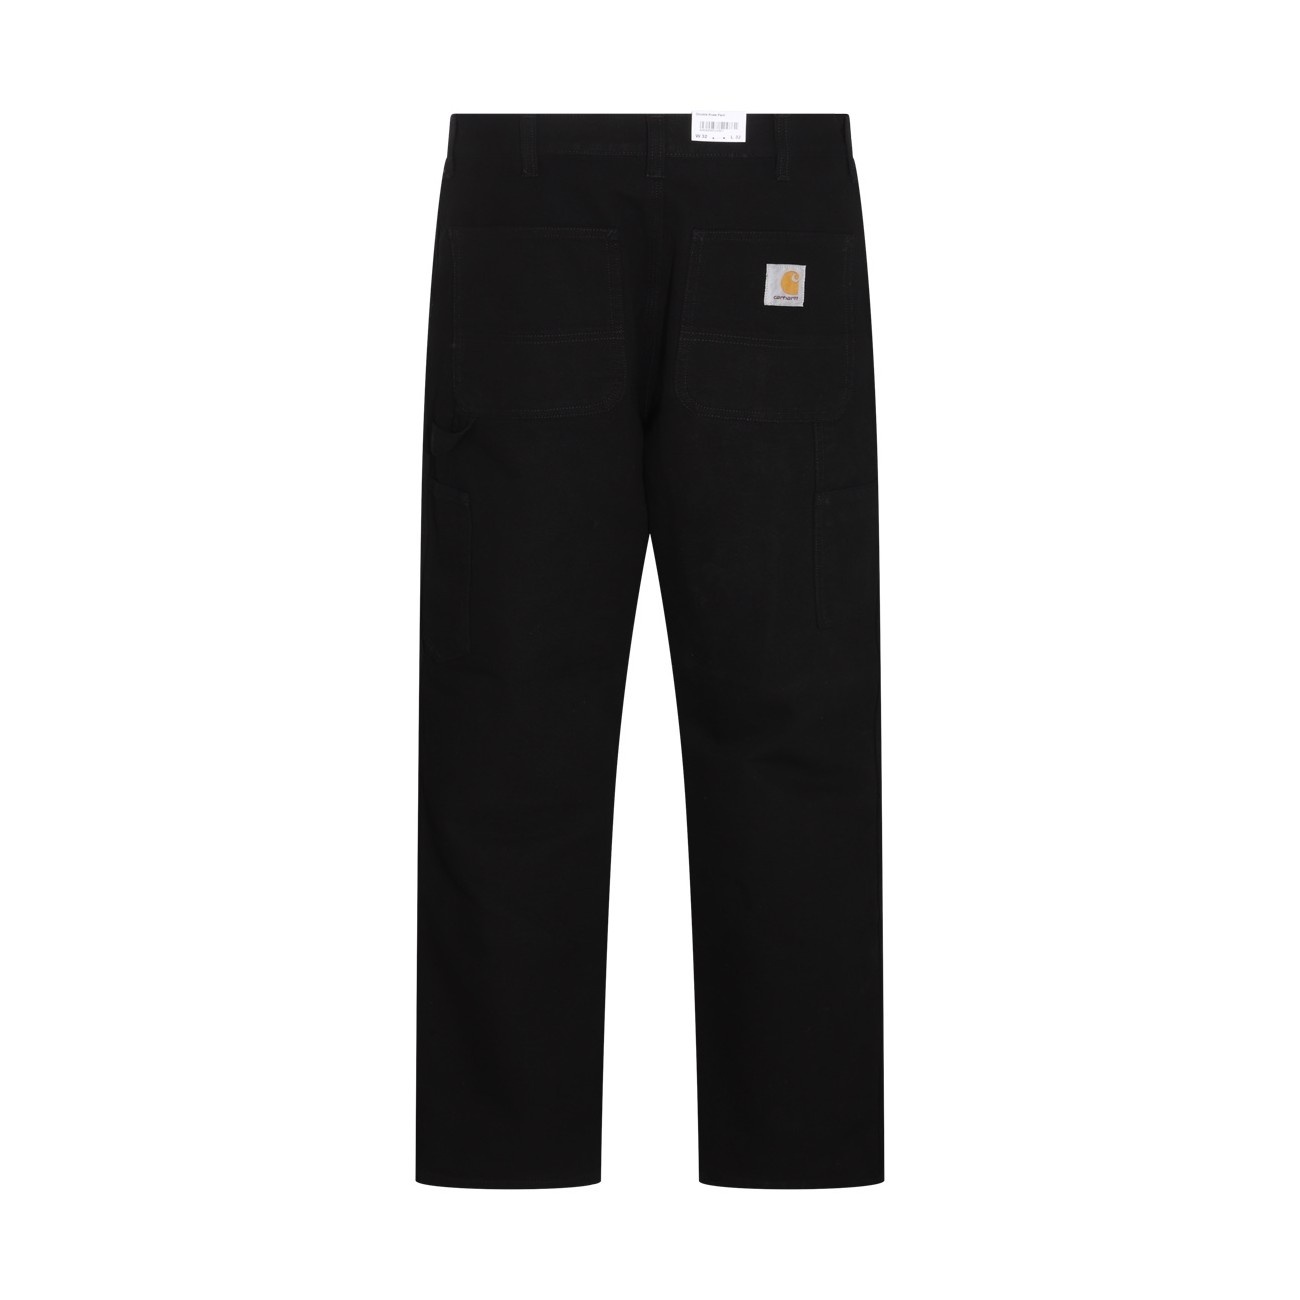 black cotton pants - 2